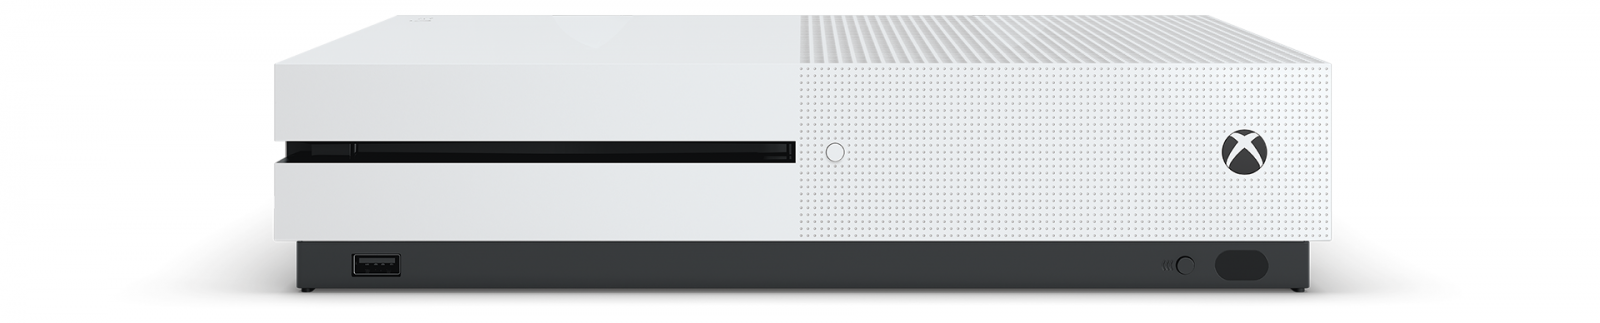 Xbox One S 1TB image1